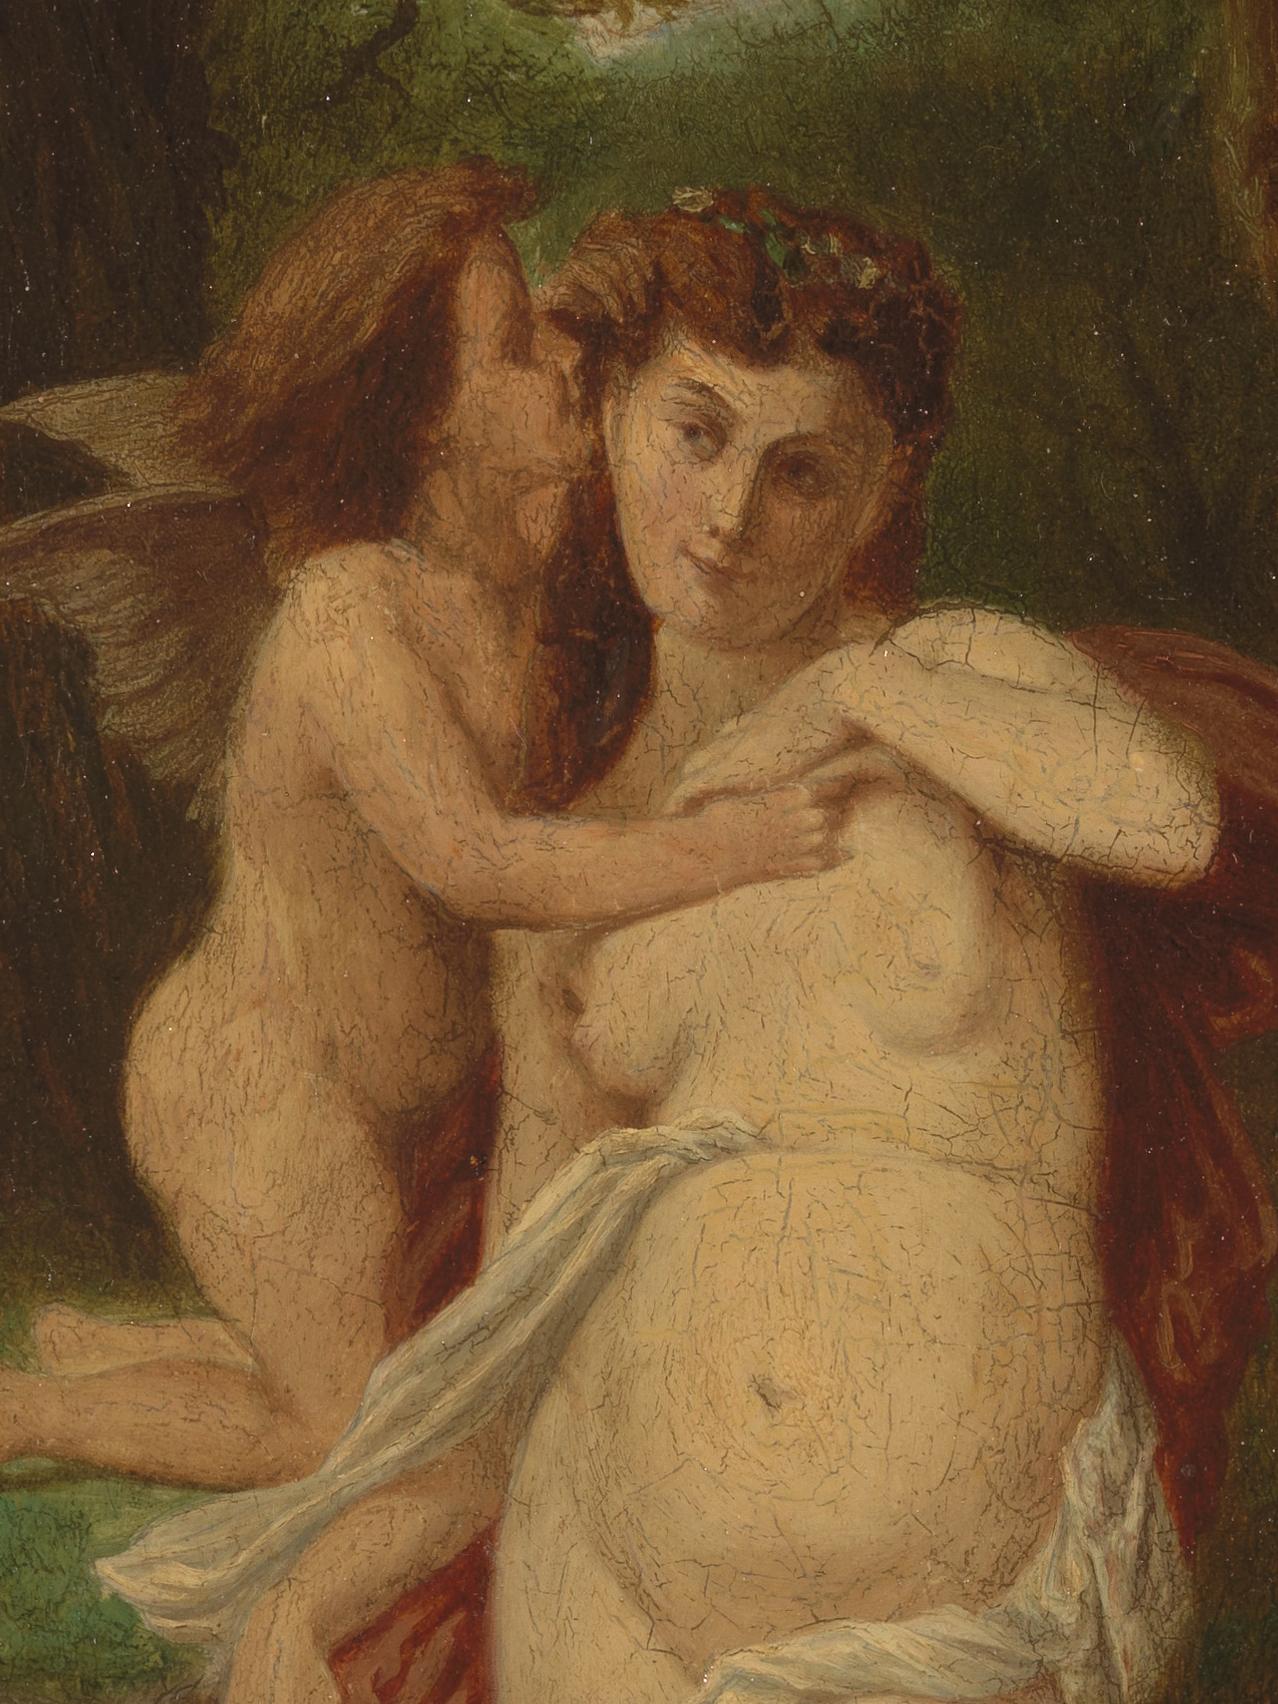 Dieses Öl auf Leinwand aus dem 19. Jahrhundert stellt den ersten Kuss zwischen Amor und Psyche dar. Es symbolisiert den Moment der Unschuld, kurz bevor das sexuelle Erwachen stattfindet. Die beiden Figuren sind nackt, wobei Psyche im Vordergrund und